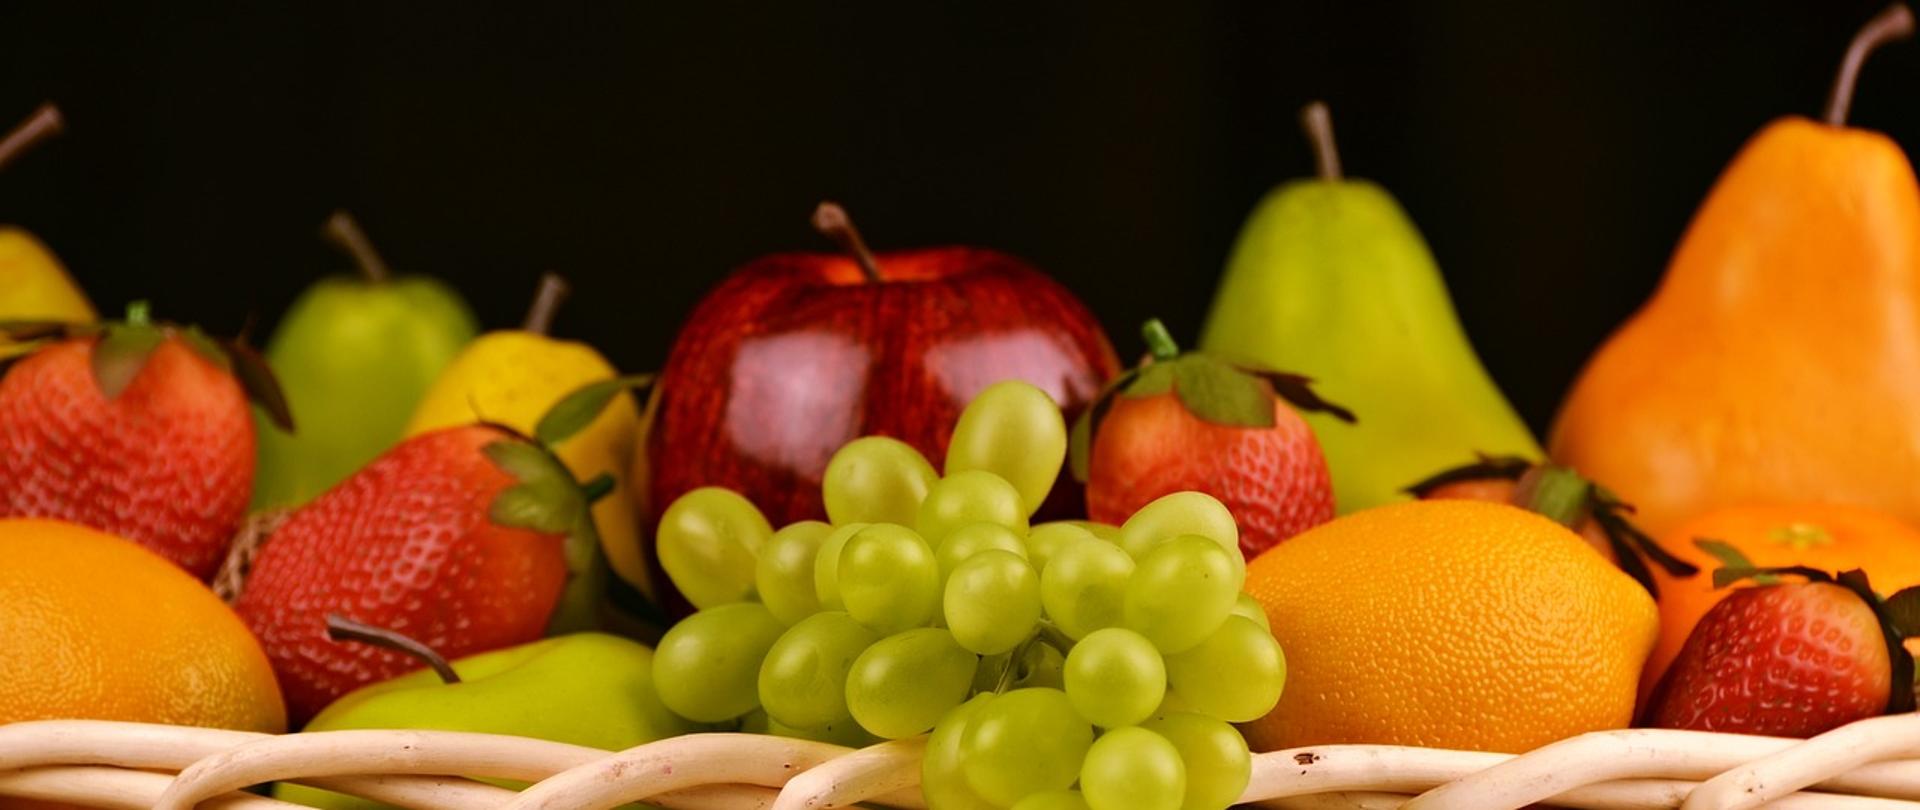 zdjęcie owoców w koszu wiklinowym, na pierwszym planie kiść zielonego winogrona, pomarańcza, cztery truskawki, czerwone jabłko, na drugim planie dwie gruszki w kolorze pomarańczowym oraz zielonym